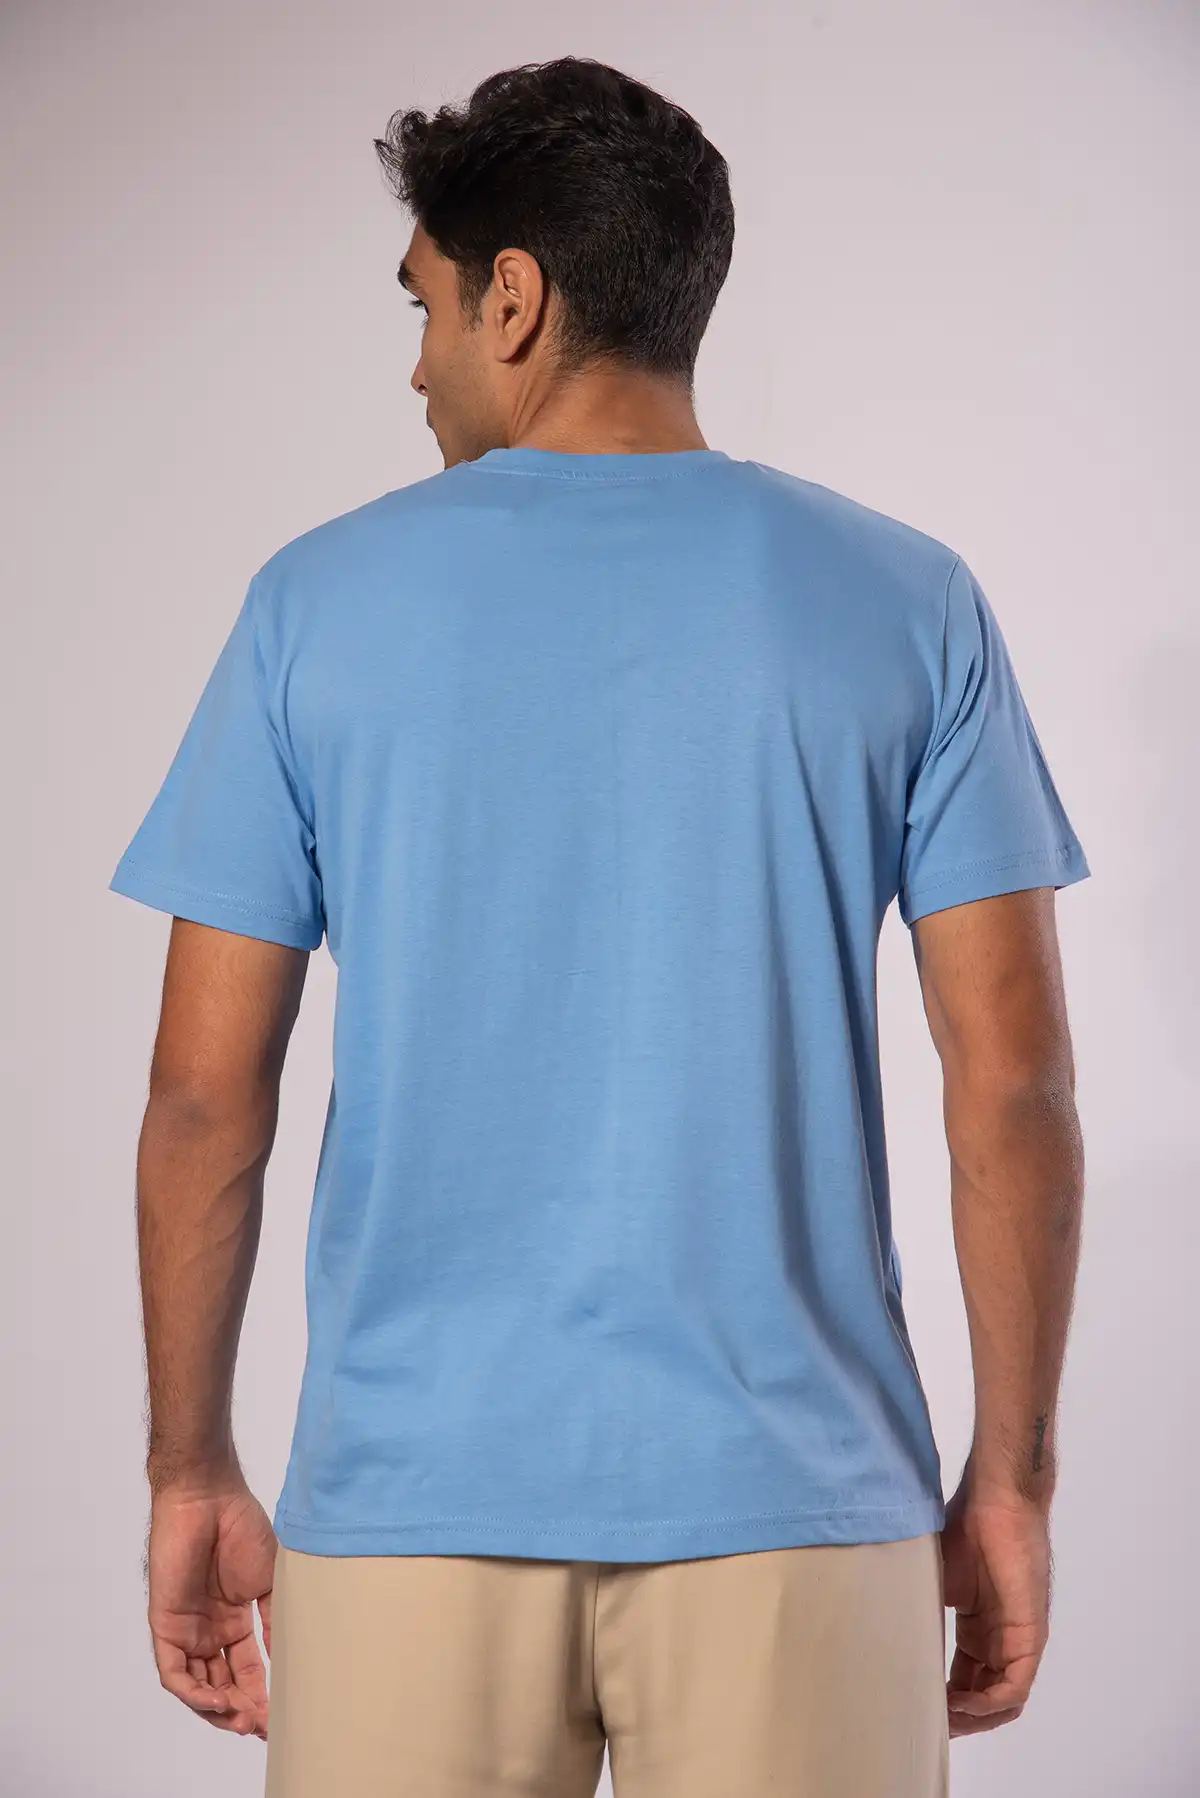 Unisex Crew Neck Cotton T-Shirt - Air Force Blue